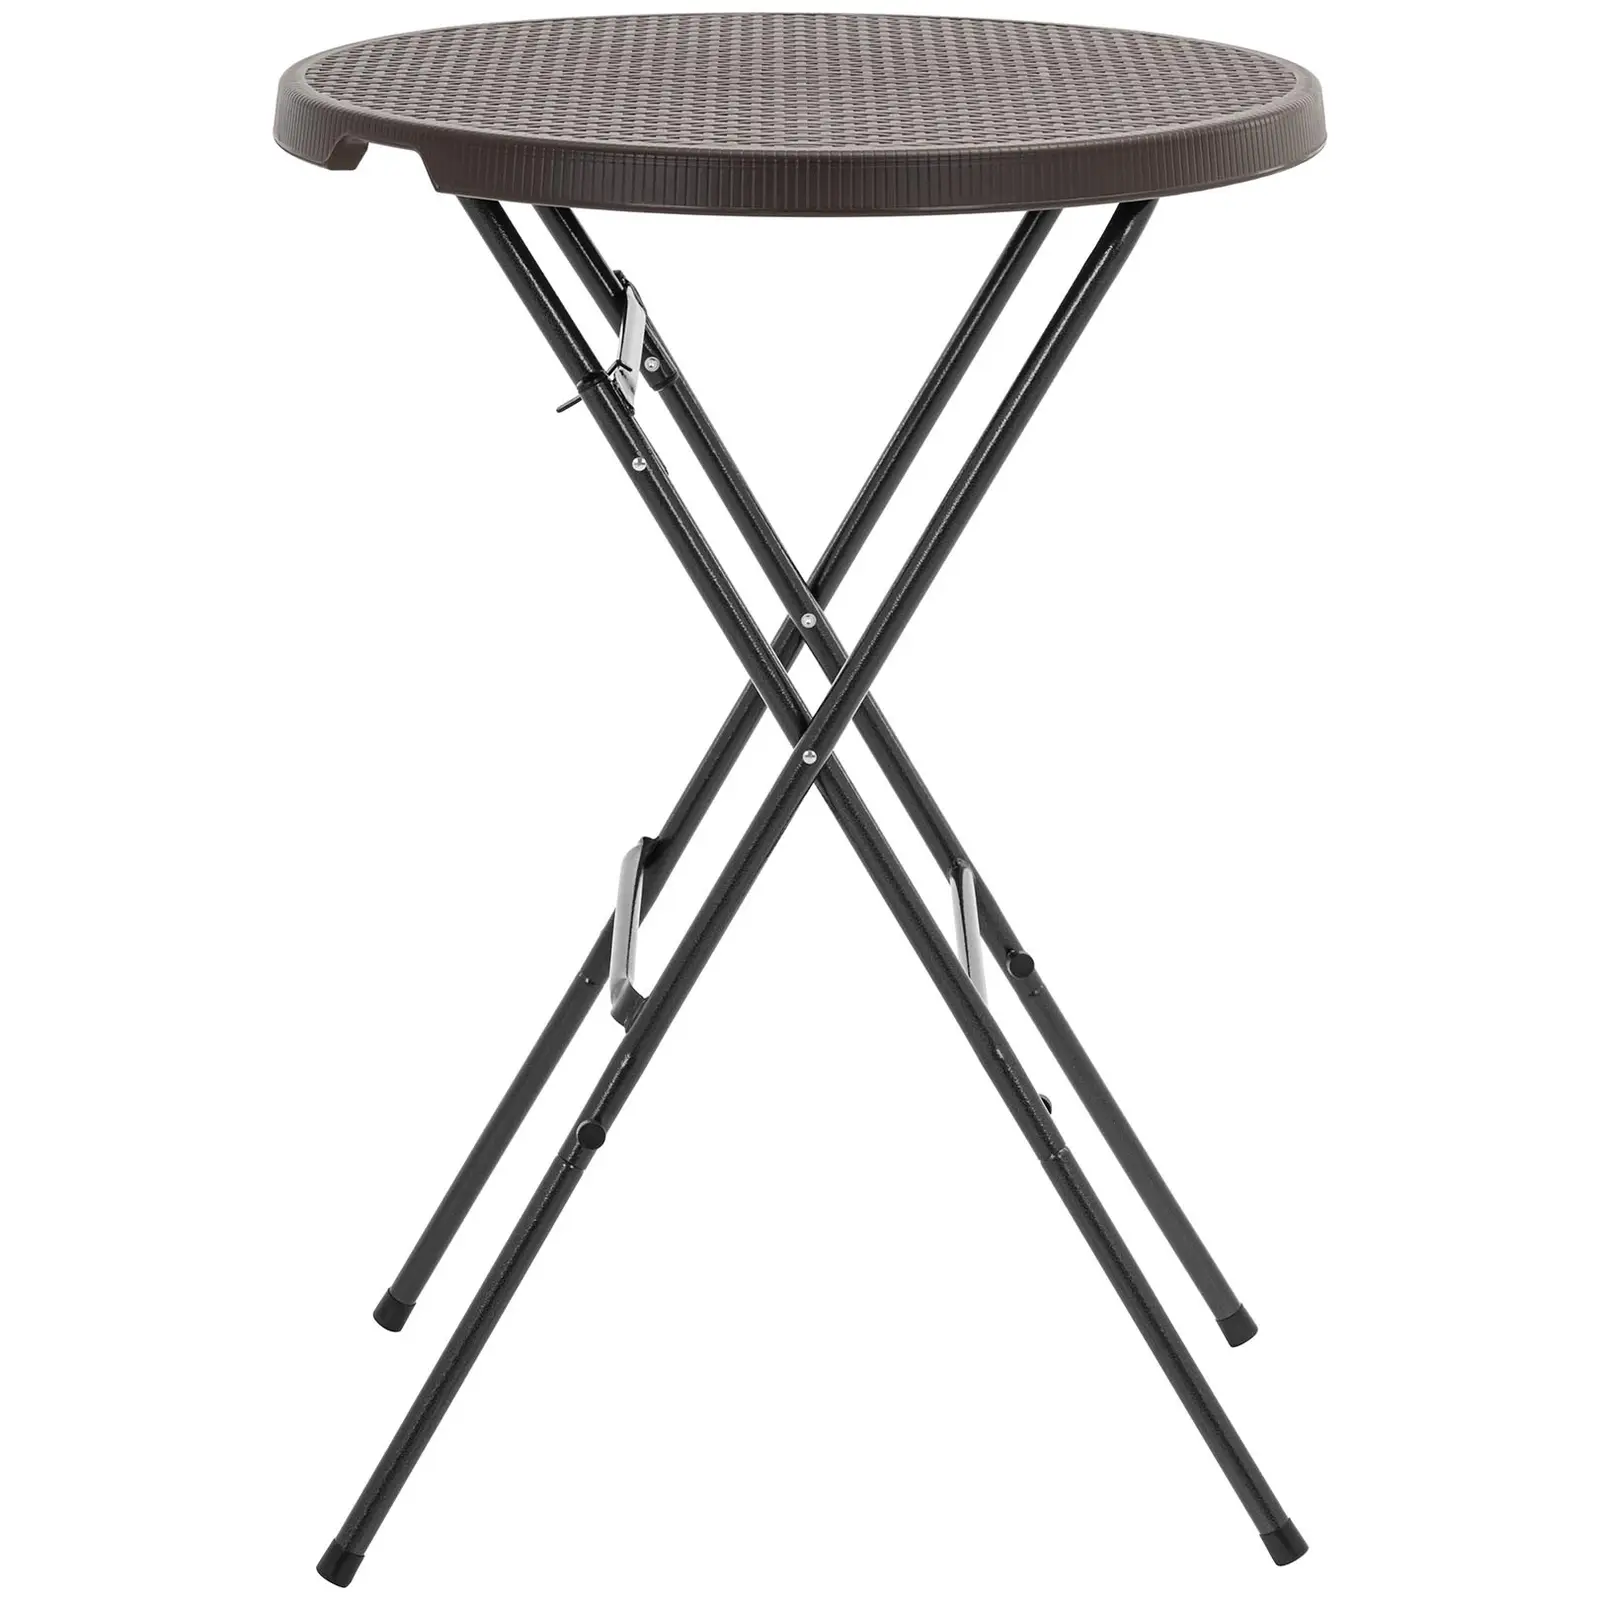 Folding Table - 79 x 79 x 110 cm - 75 kg - indoor/outdoor - black